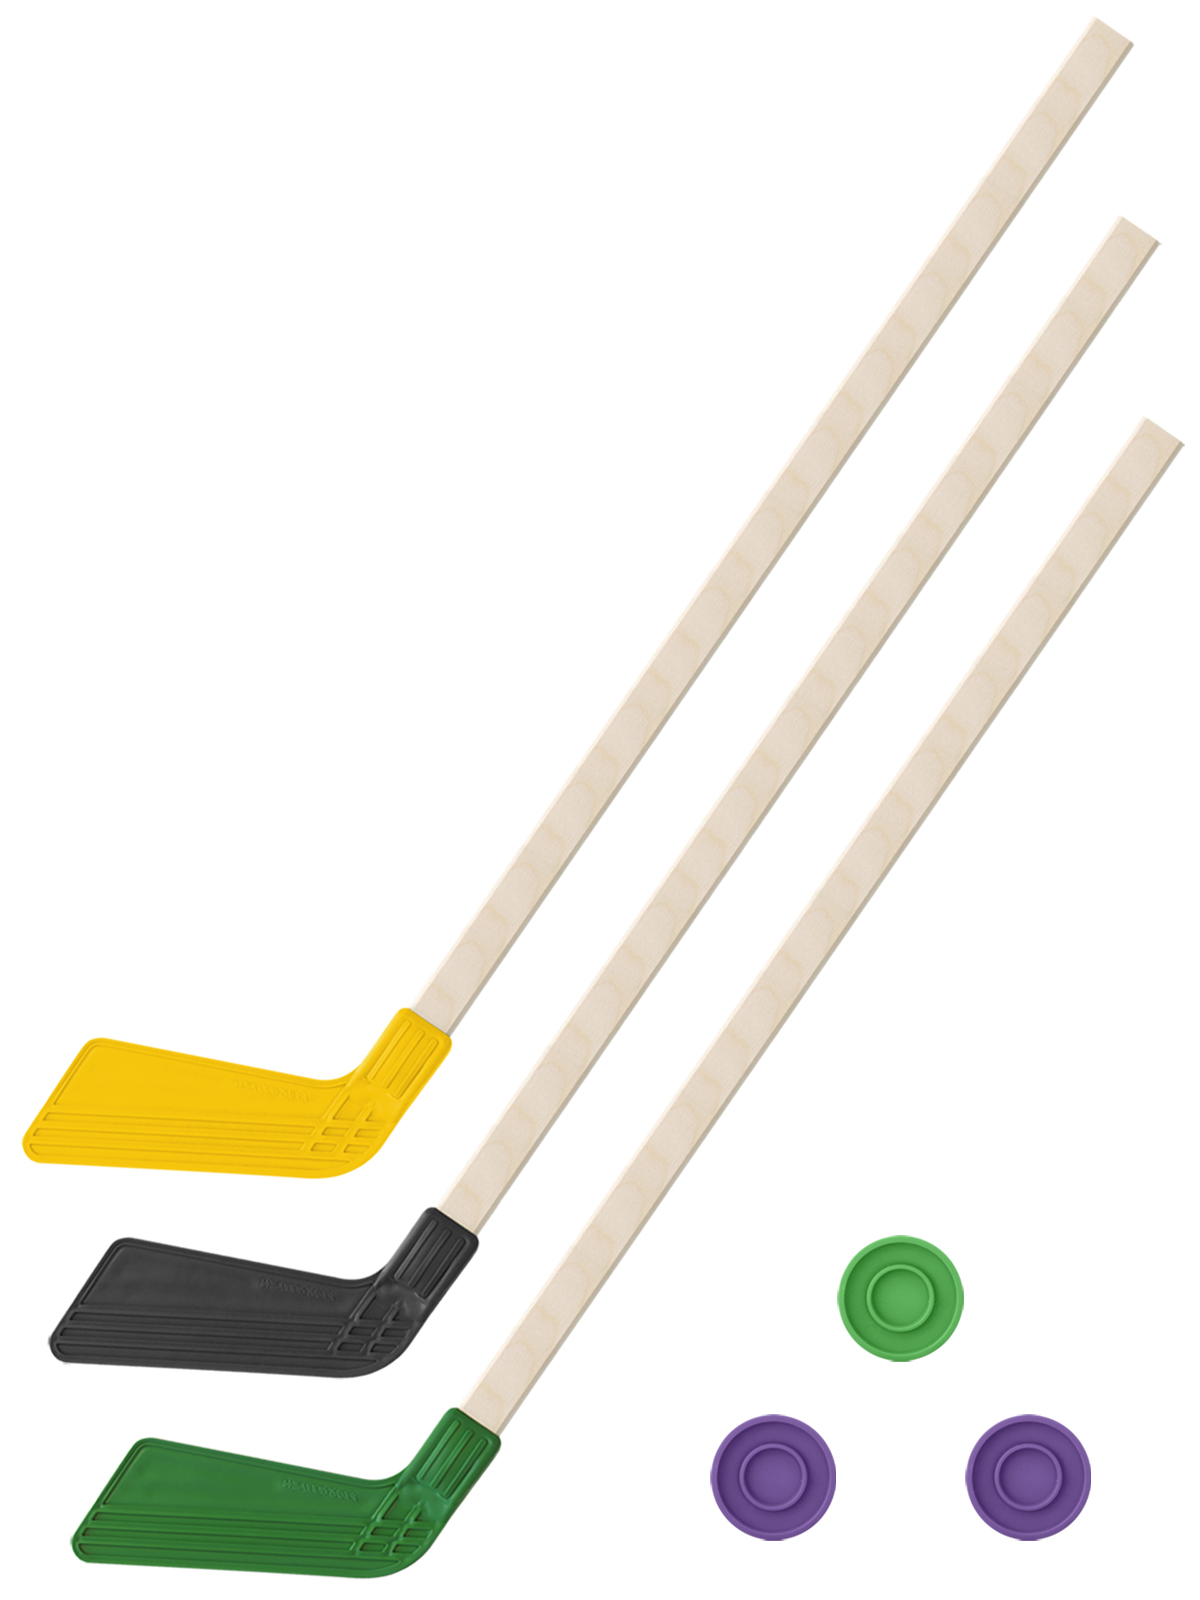 Детский хоккейный набор Задира-плюс 3 в 1 Клюшка хоккейная 80см (жел,черн,зел) + 3 шайбы детский хоккейный набор задира плюс 3 в 1 клюшка хоккейная 80 см 2 черн 1крас 3 шайбы